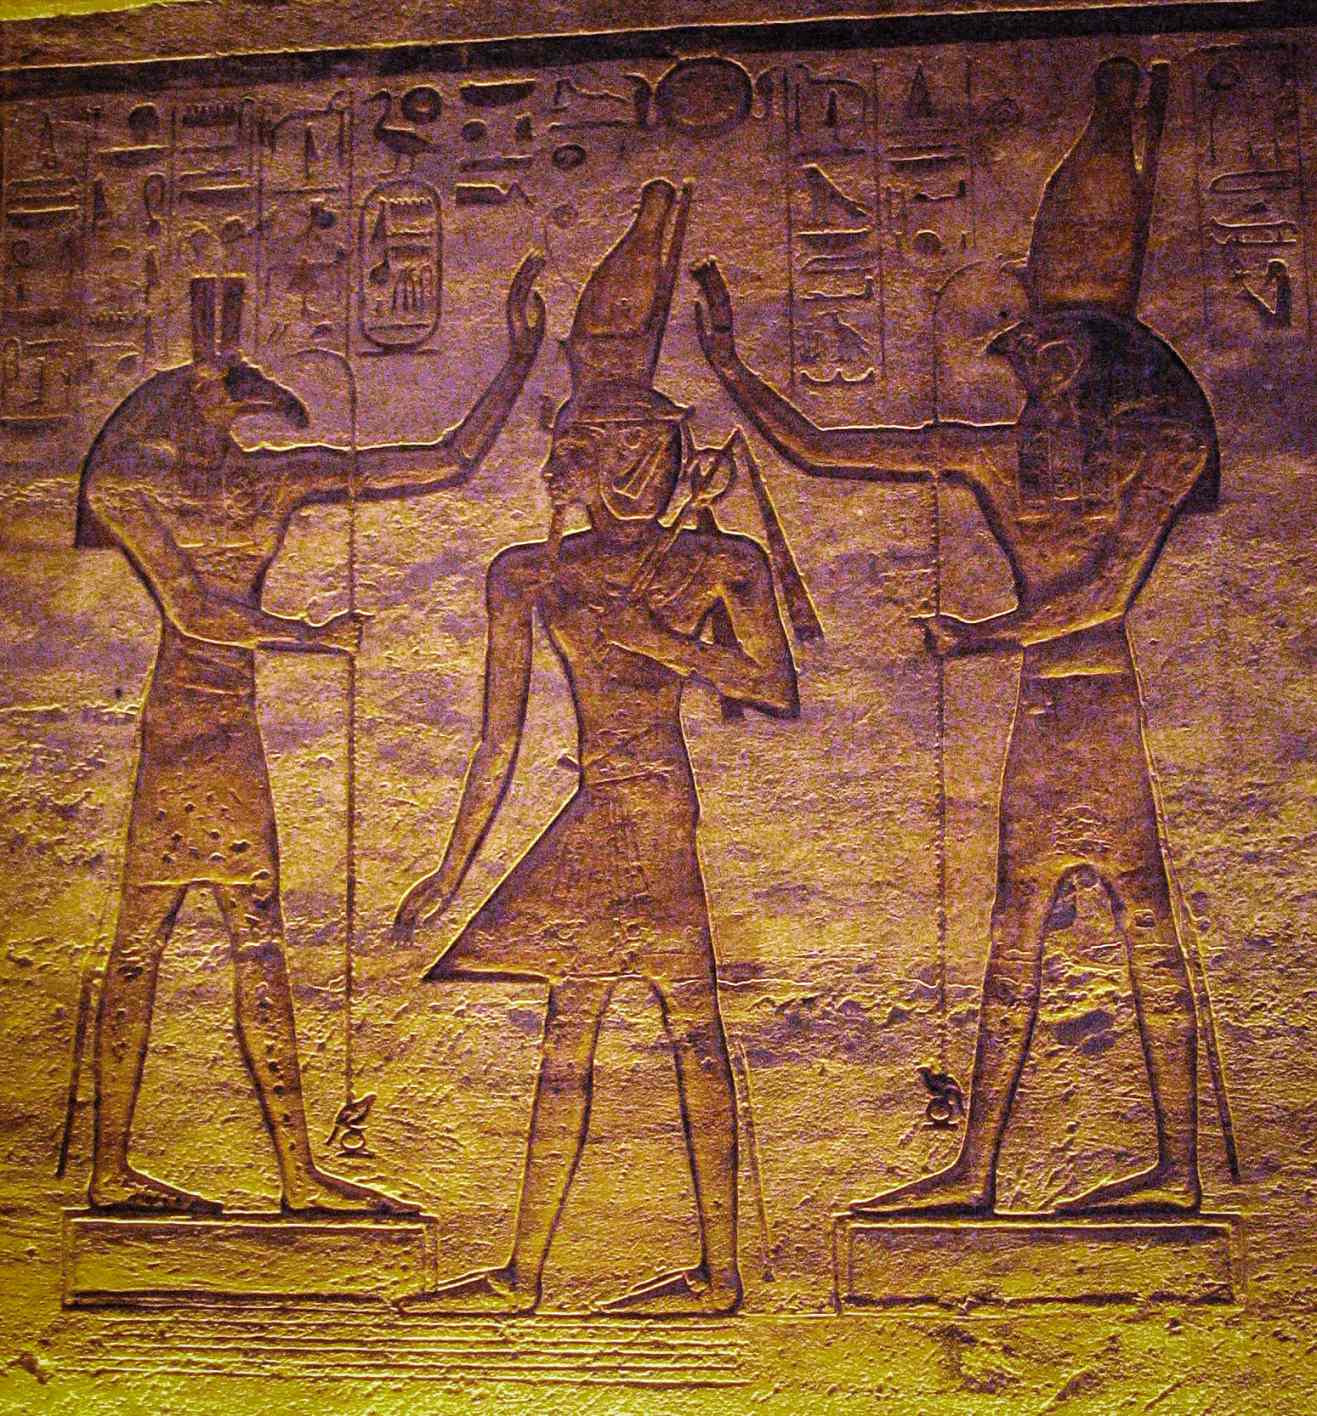 Set (Seth) y Horus adorando a Ramsés. El estudio actual muestra que la luna pudo haber sido representada por Seth y la estrella variable Algol por Horus en el Calendario de El Cairo.